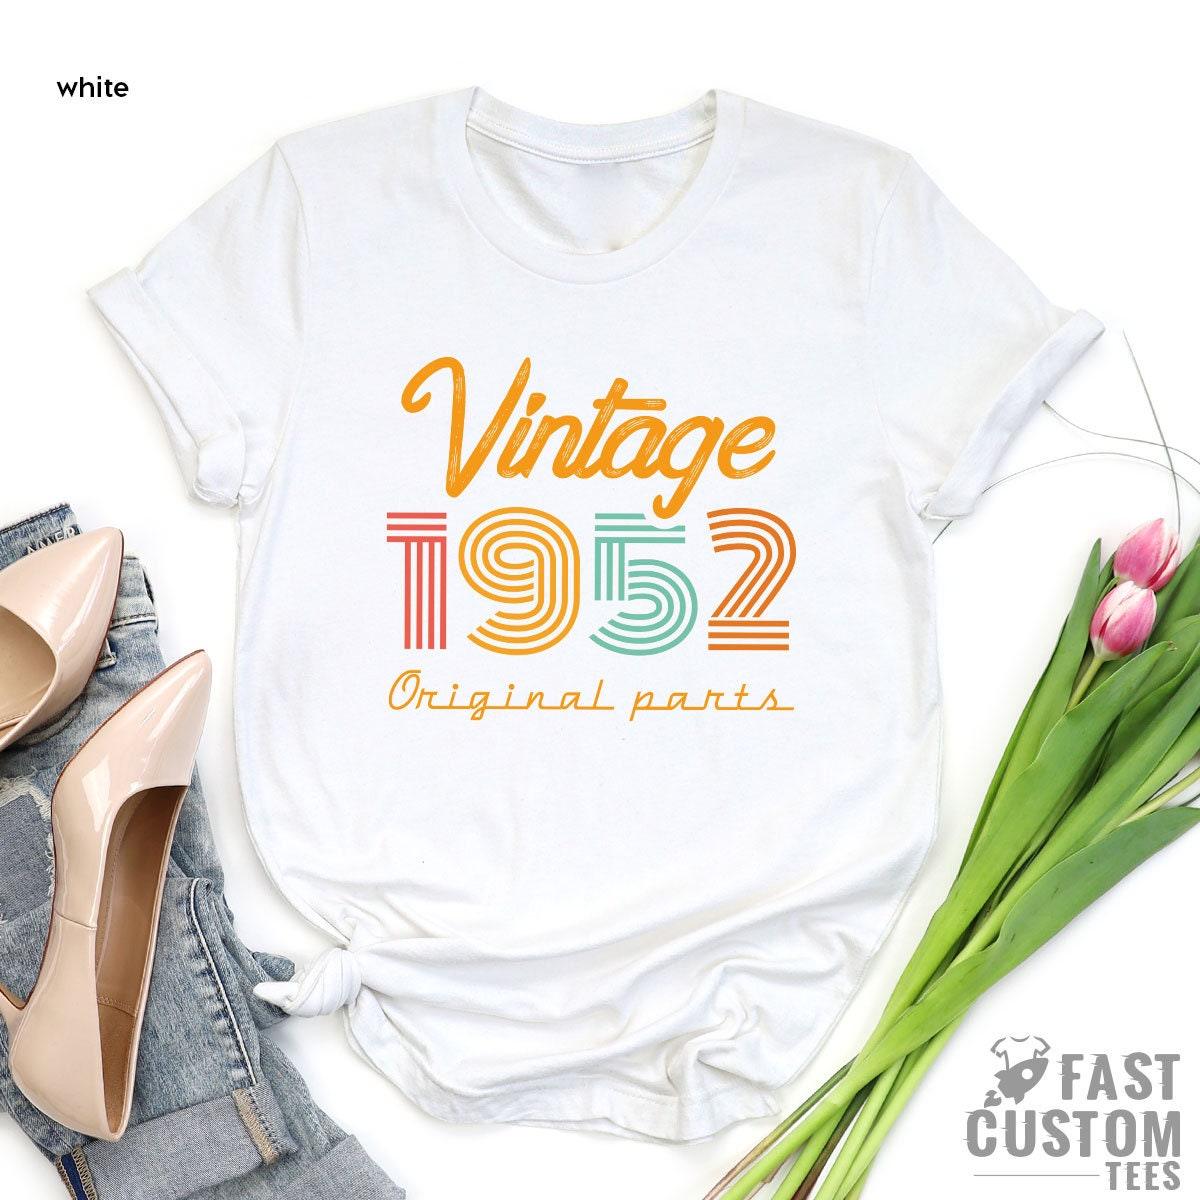 69th Birthday Shirt, Vintage T Shirt, Vintage 1952 Shirt, 69th Birthday Gift For Women, 69th Birthday Shirt Men, Retro Shirt, Vintage Shirts - Fastdeliverytees.com